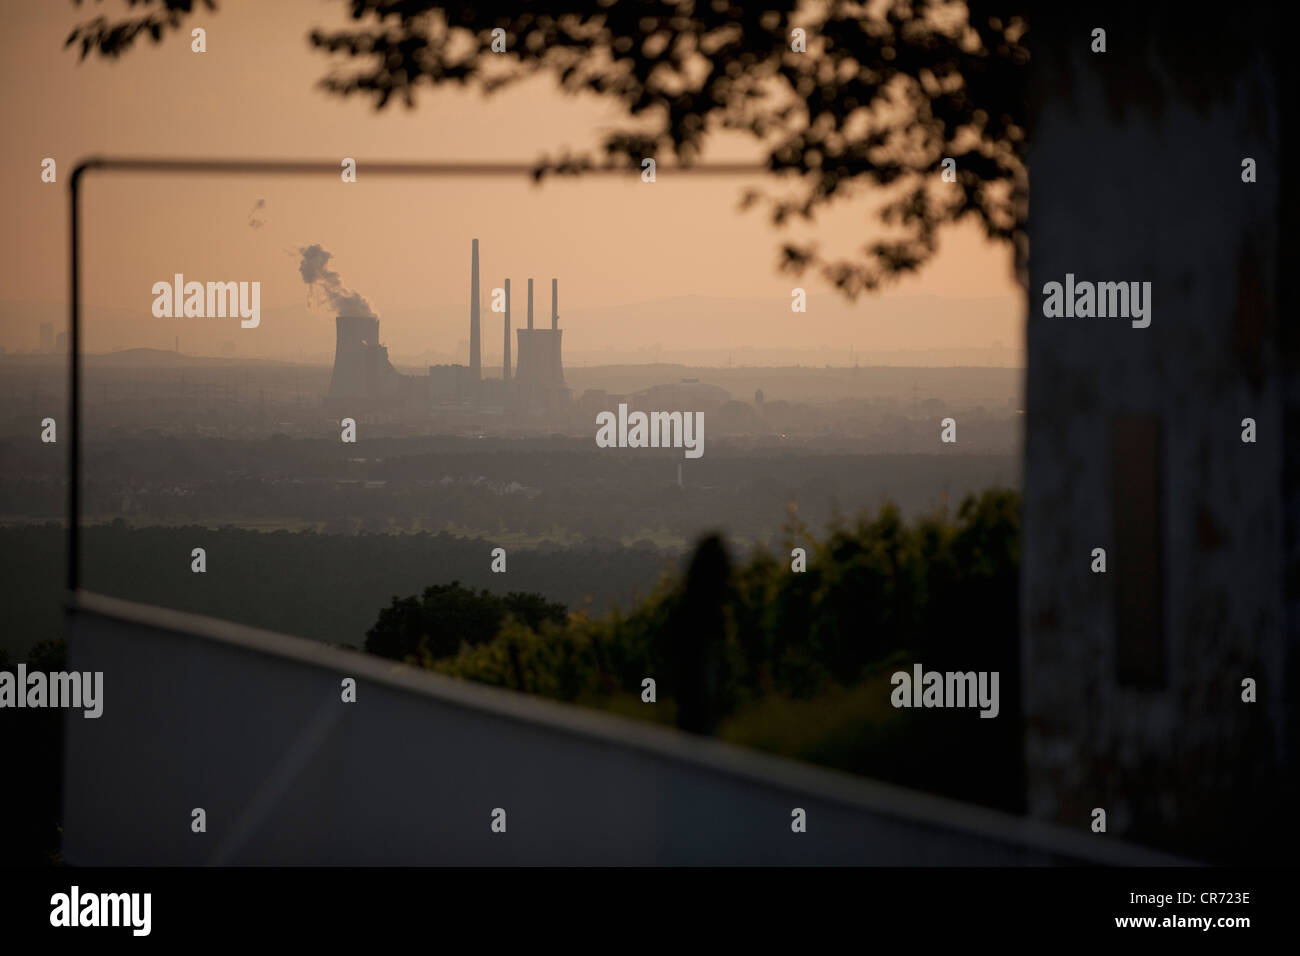 Alemania, Vista de la planta de energía de la estación al atardecer Foto de stock